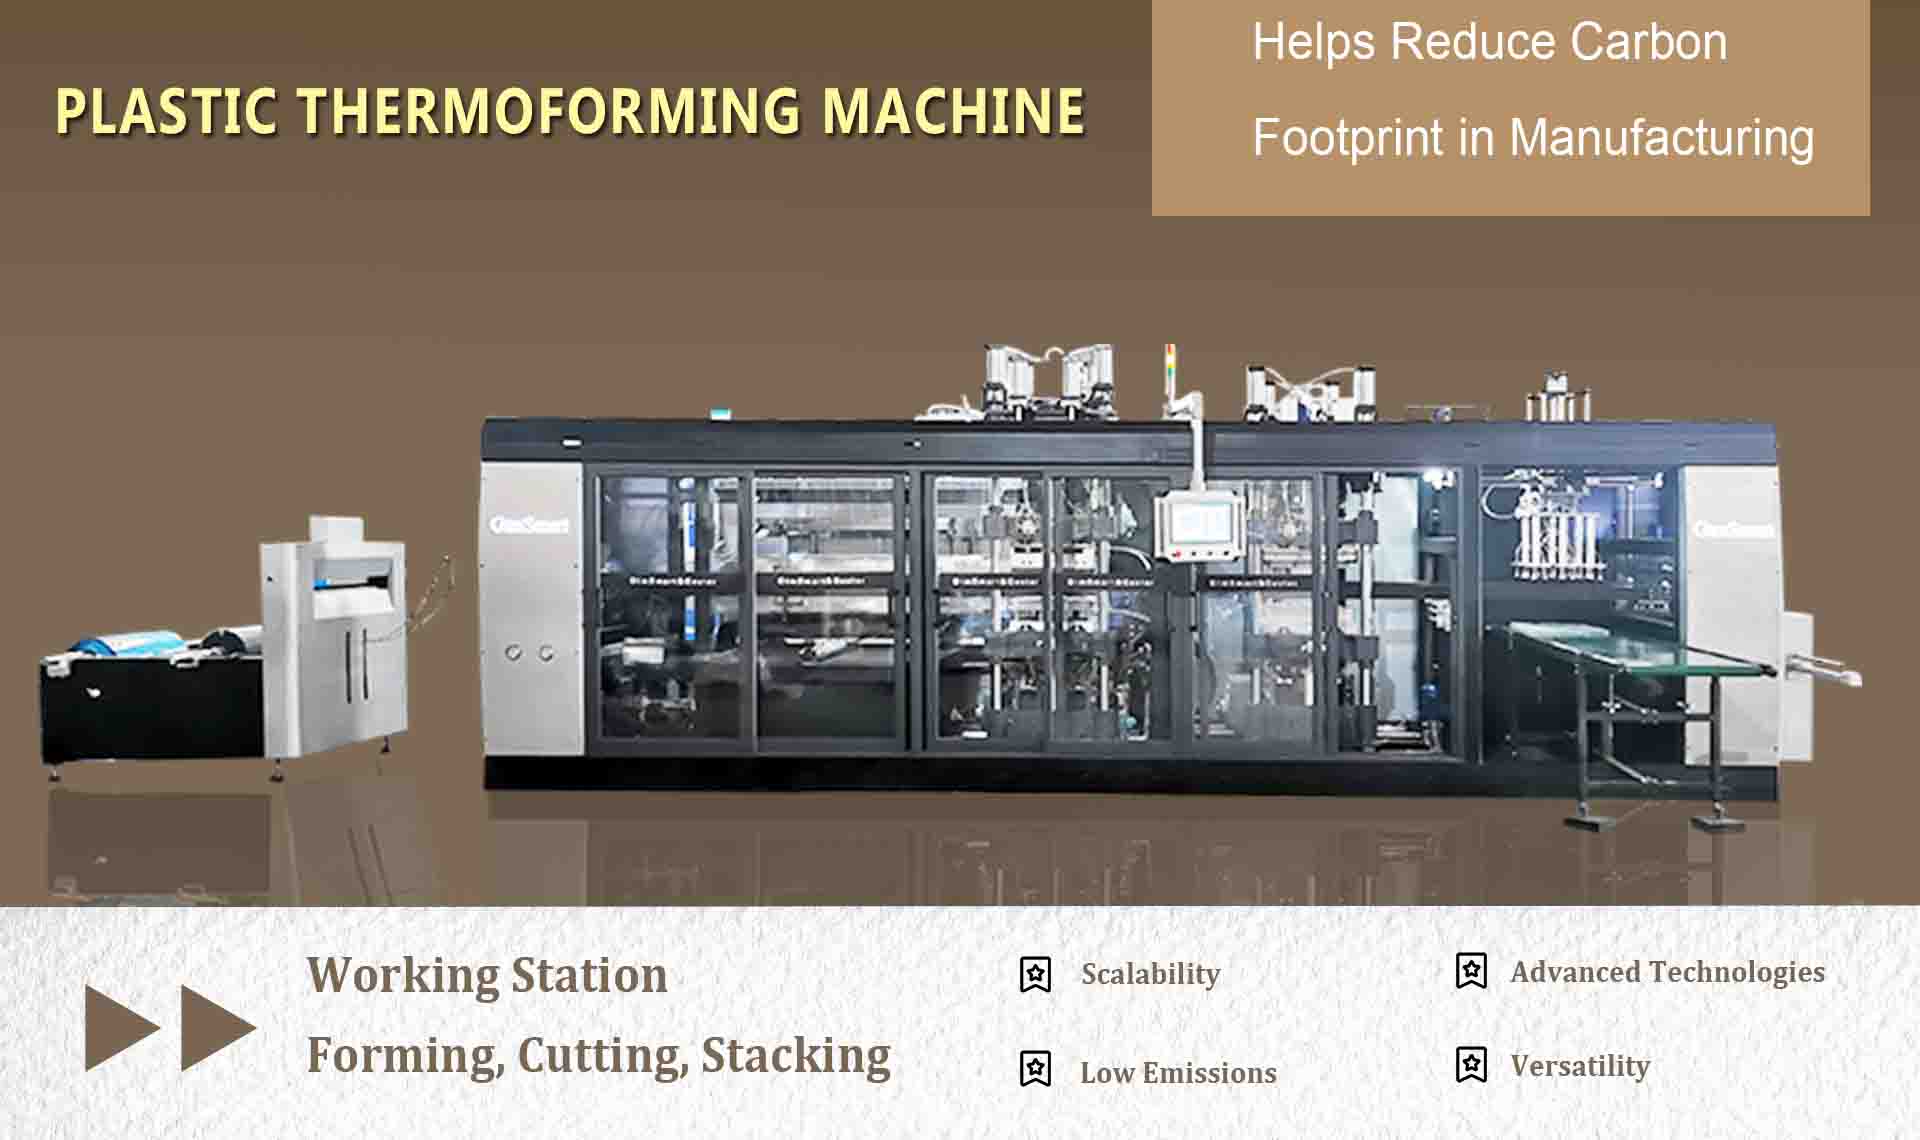 PLA plastmasas termoformēšanas mašīna palīdz samazināt oglekļa nospiedumu